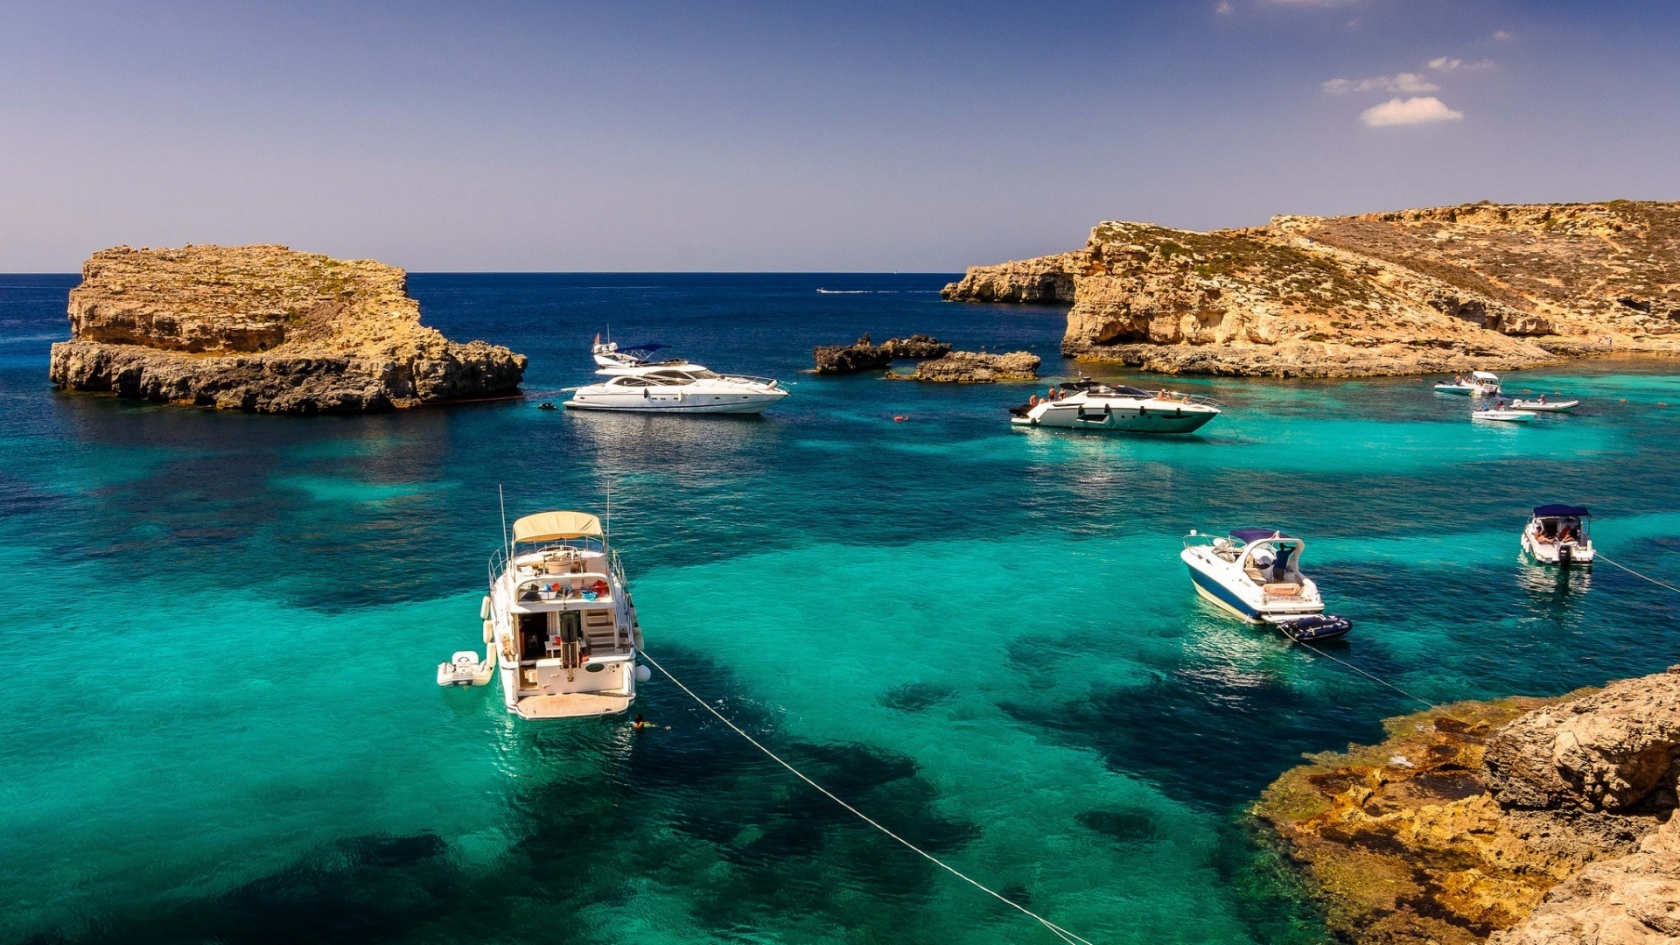 Malta Sea Corner for 1680 x 945 HDTV resolution